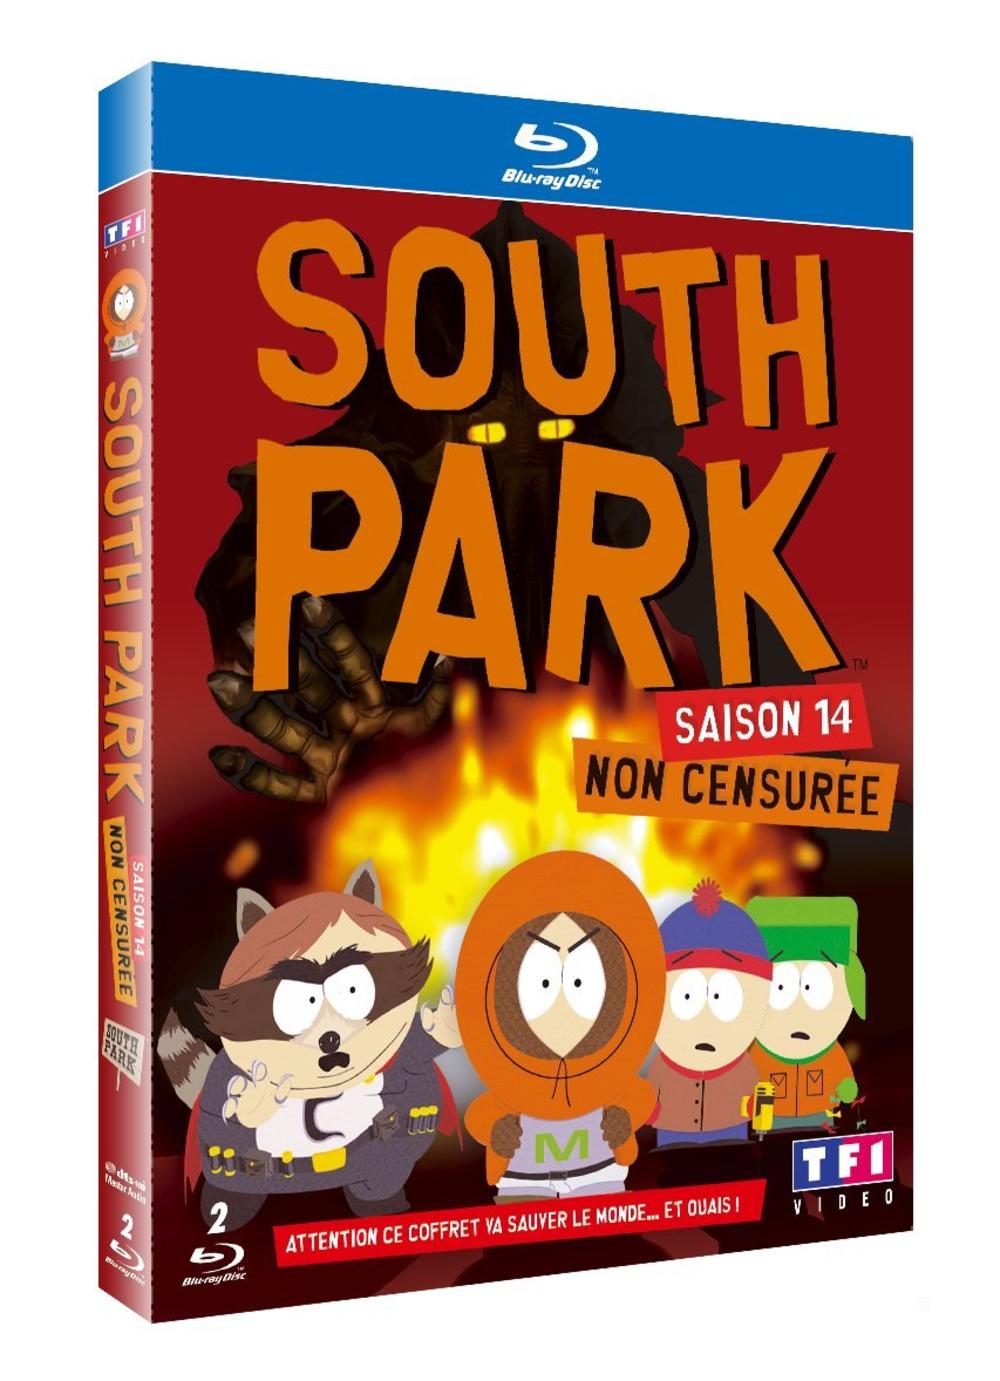 SOUTH PARK INTEGRALE SAISON 14 Blu-ray